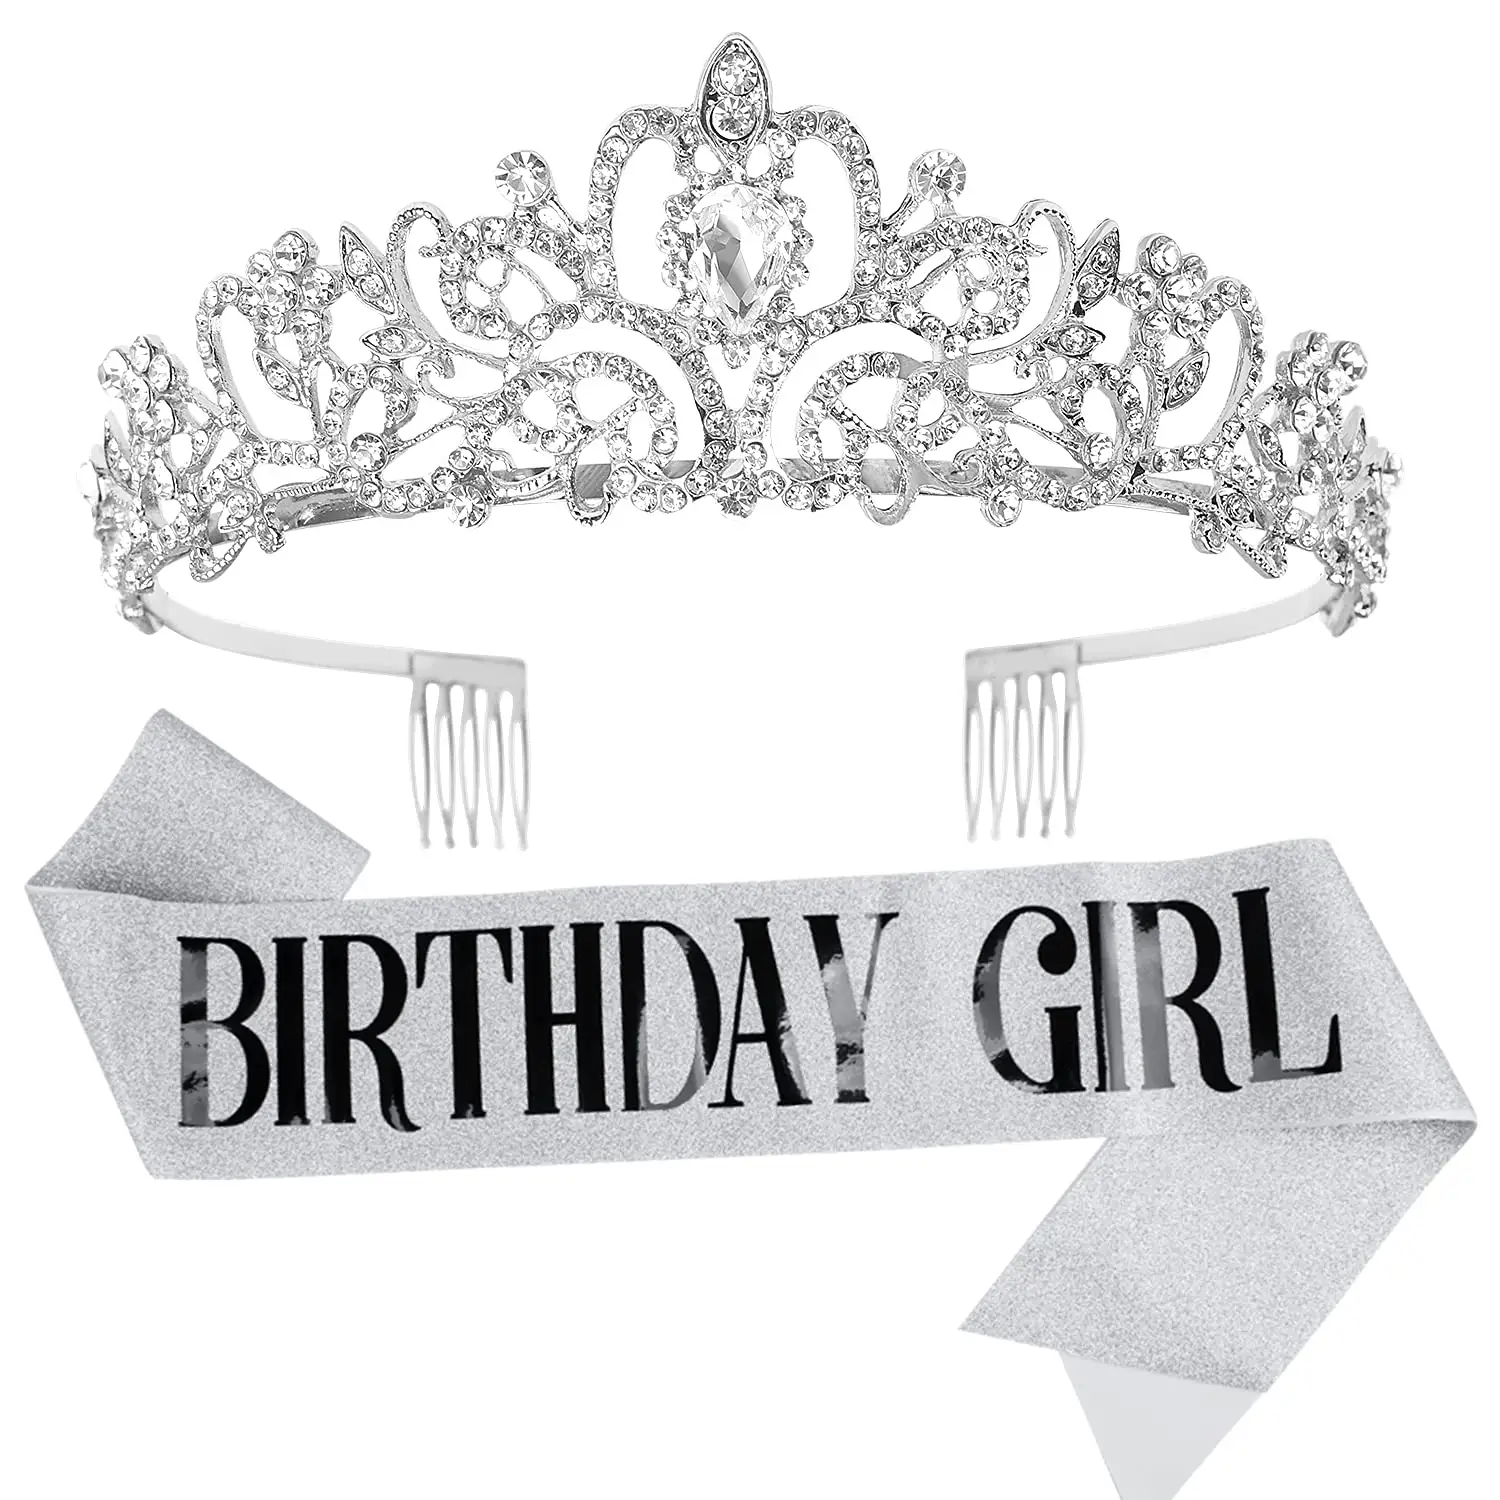 Birthday Girl Sash & Crown Tiara Kit - Black Glitter Birthday girl queen Sash regali per le donne forniture per feste di compleanno